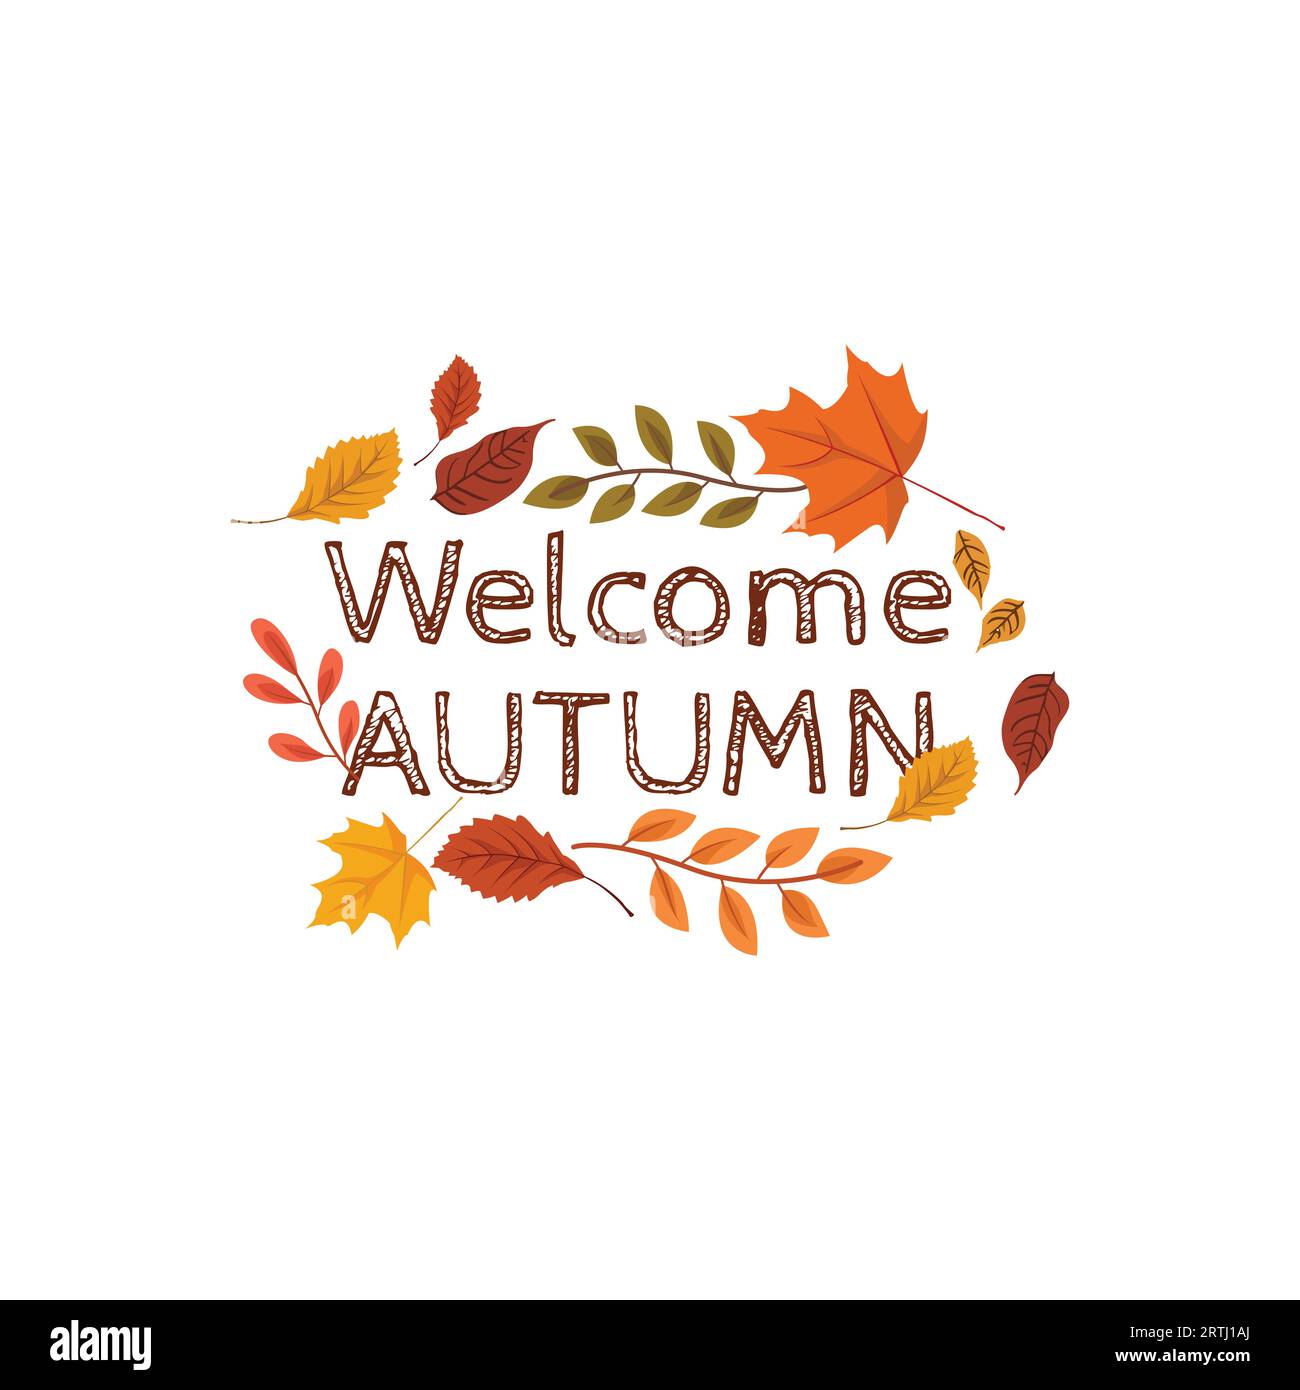 Flat Design Bienvenue Autumn Leaves Background. Illustration vectorielle des feuilles d'automne avec la typographie d'automne bienvenue Illustration de Vecteur